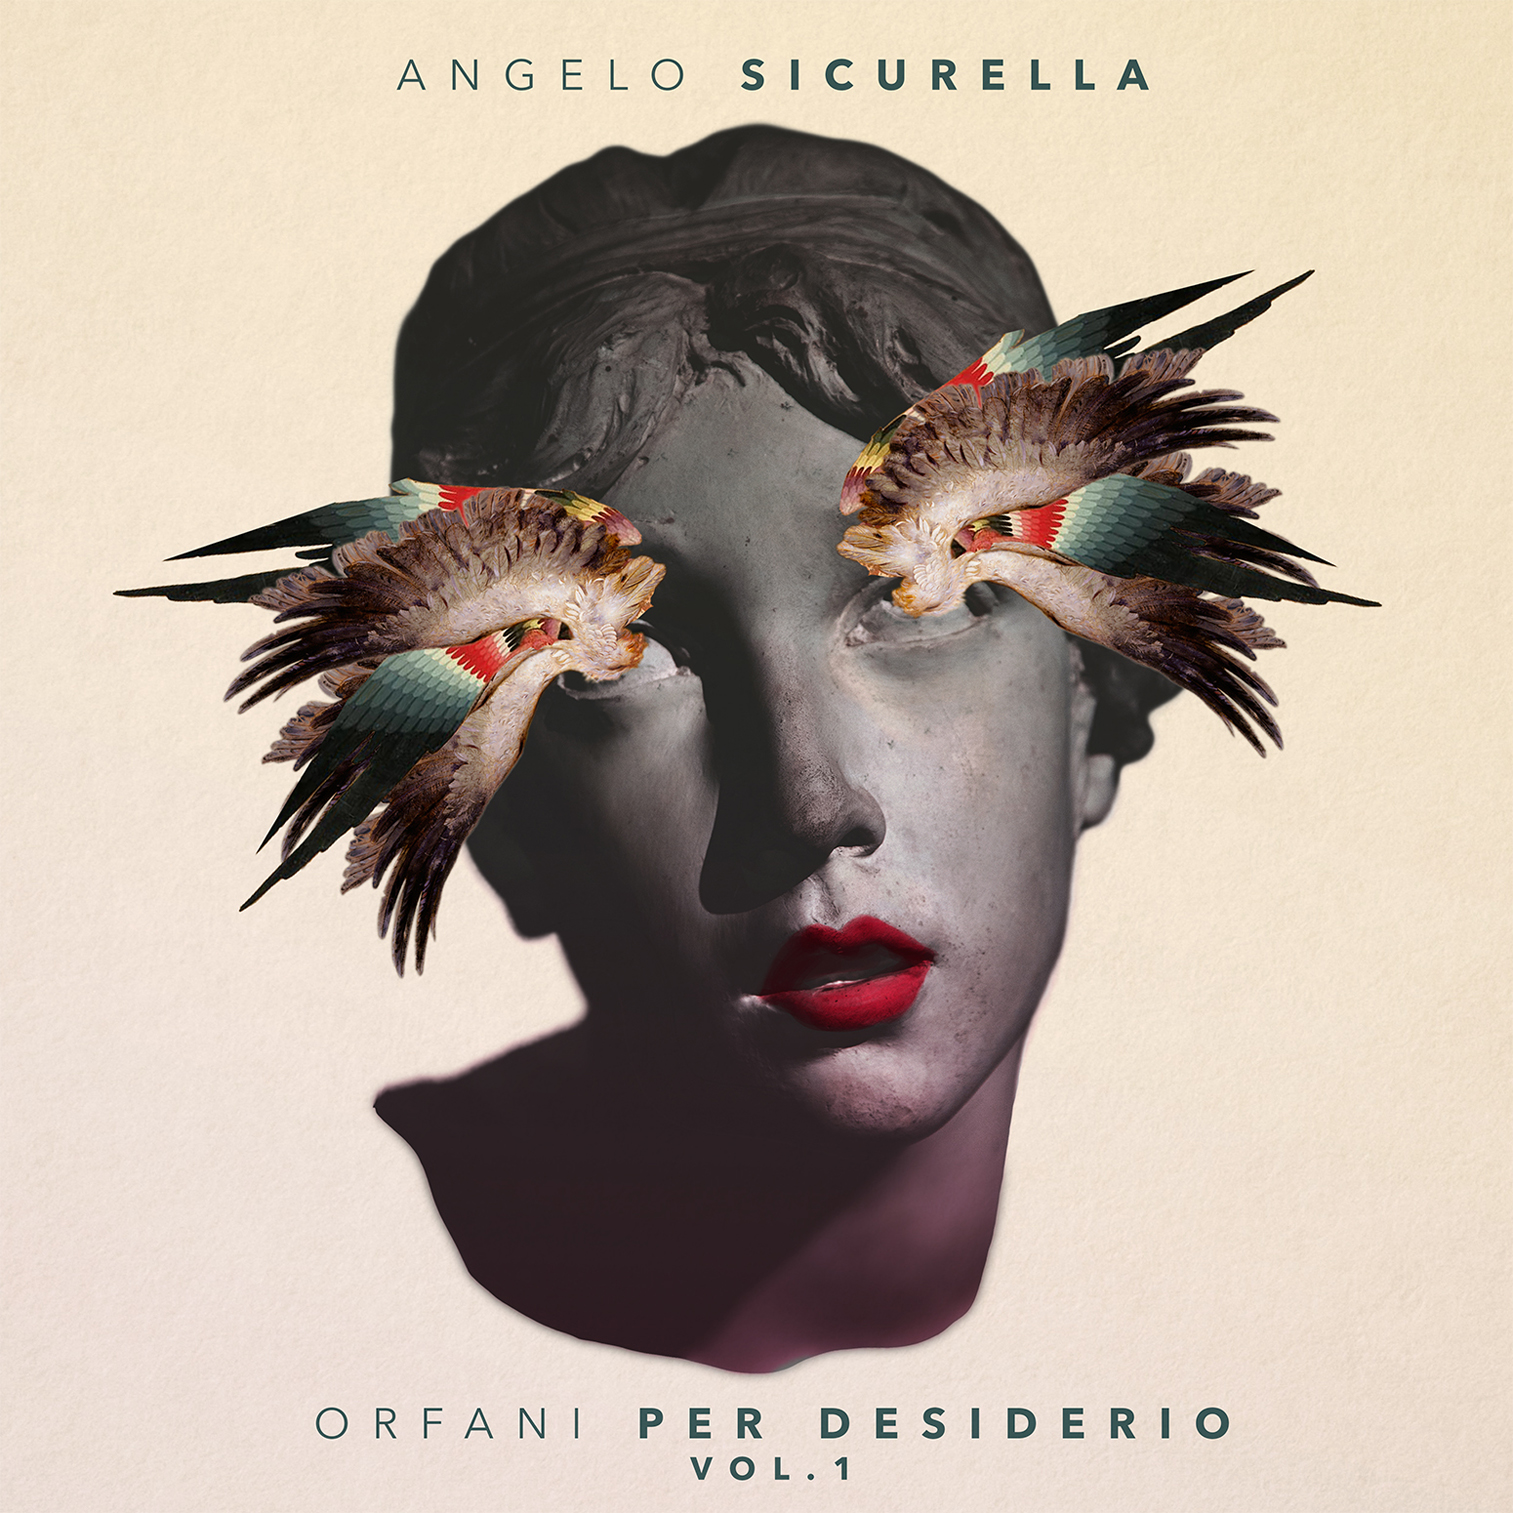 Angelo Sicurella - Orfani per desiderio